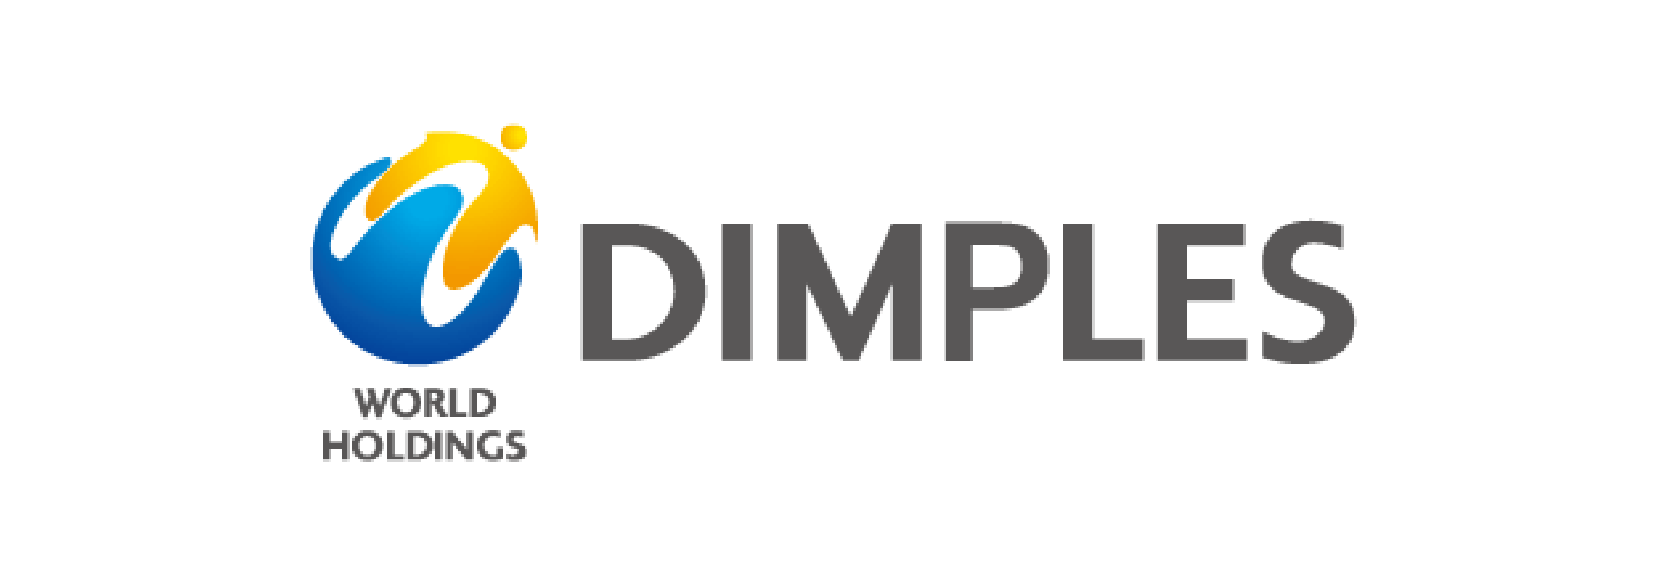 DIMPLE CO., LTD.